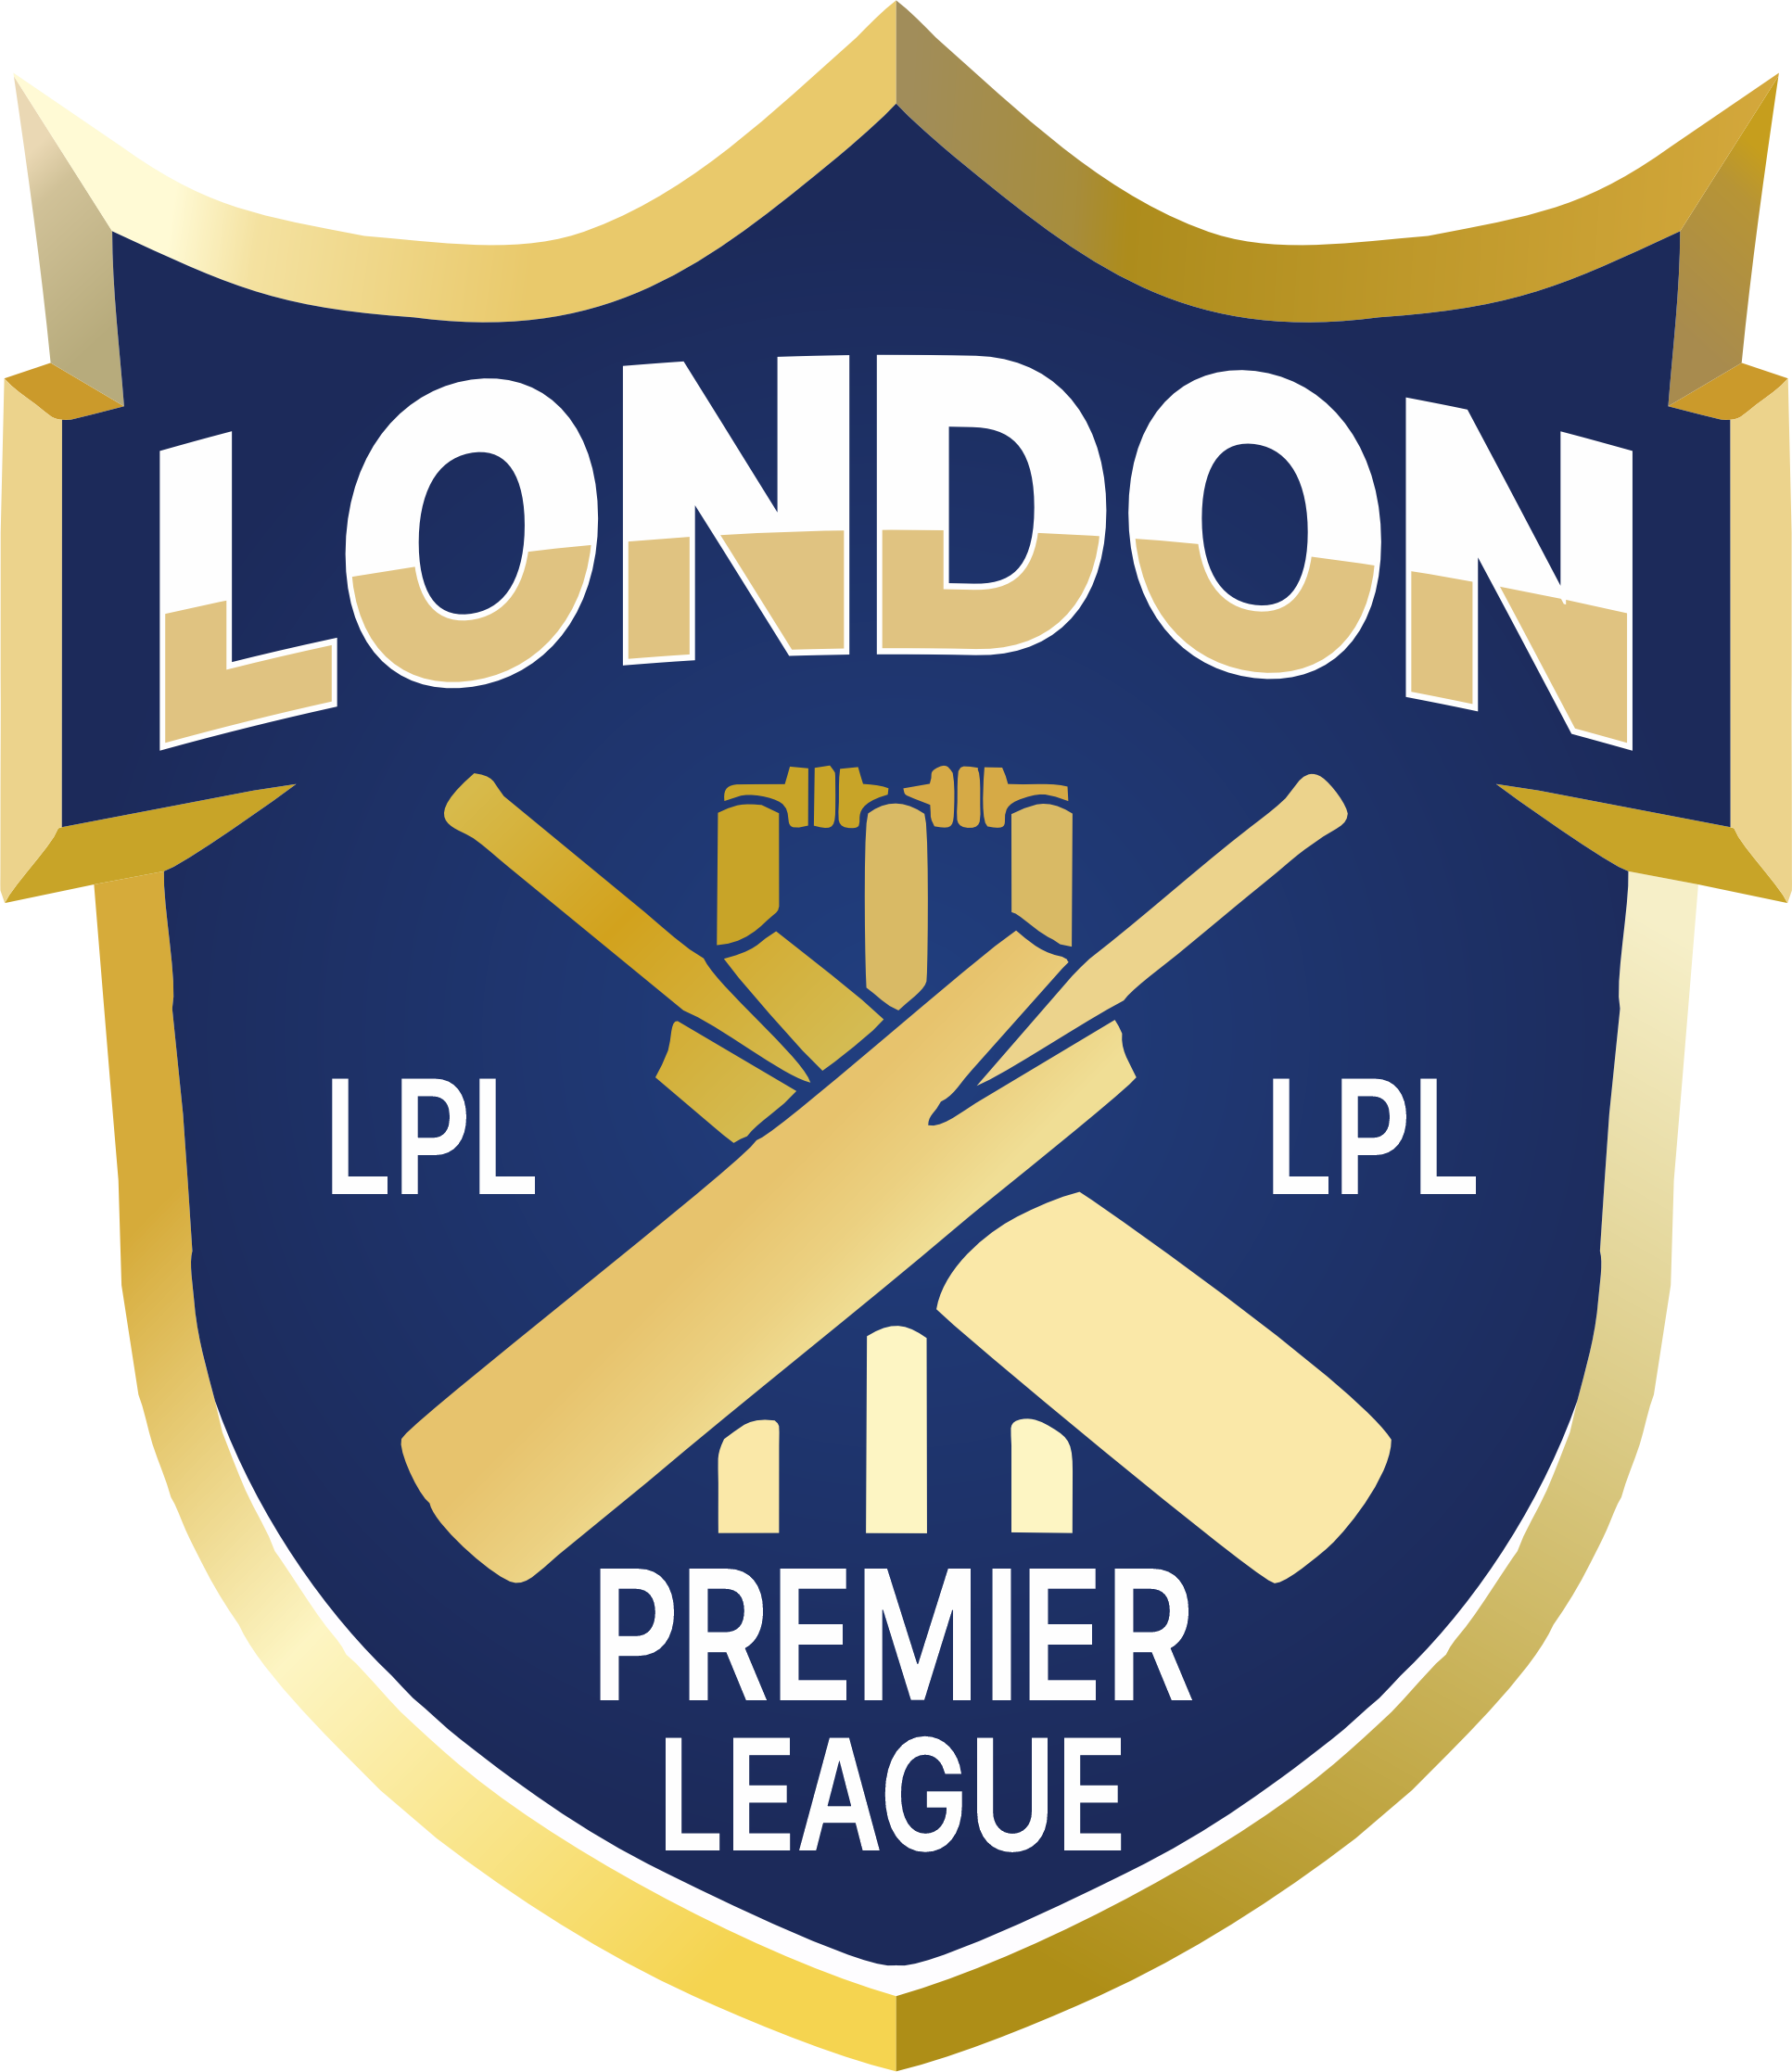 London Premier League LPL Ltd